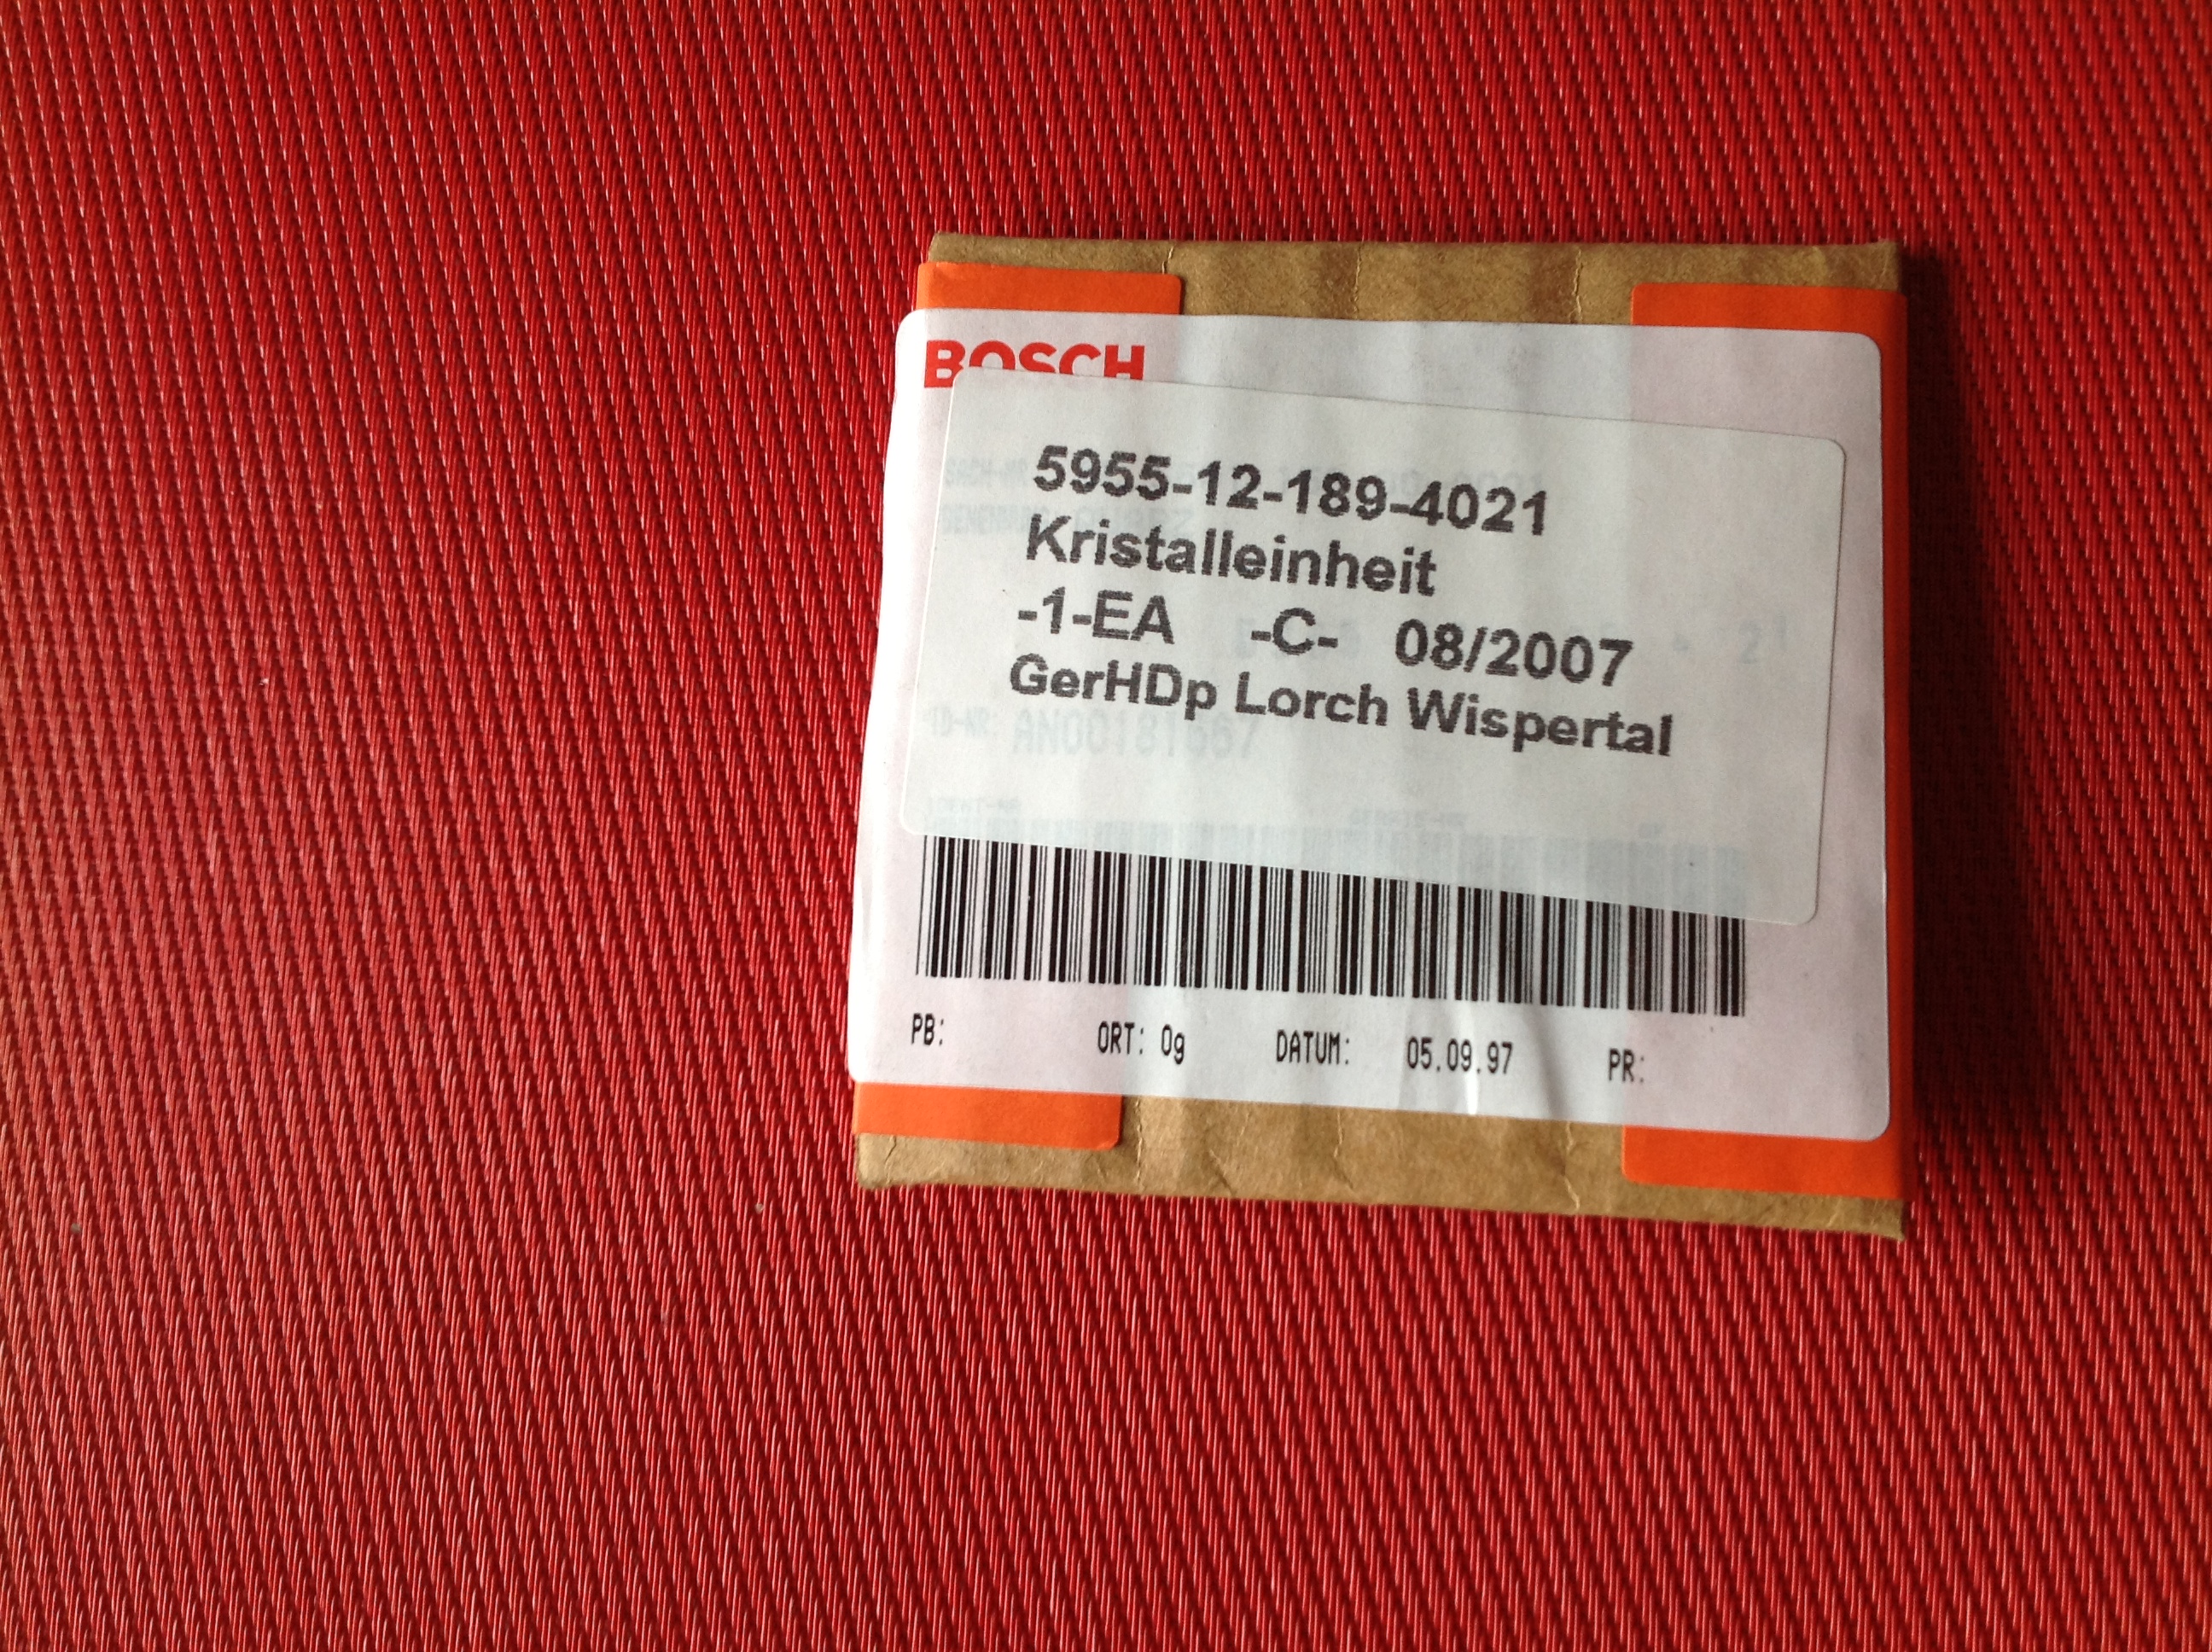 Bosch Kristall 93.10093 MHz